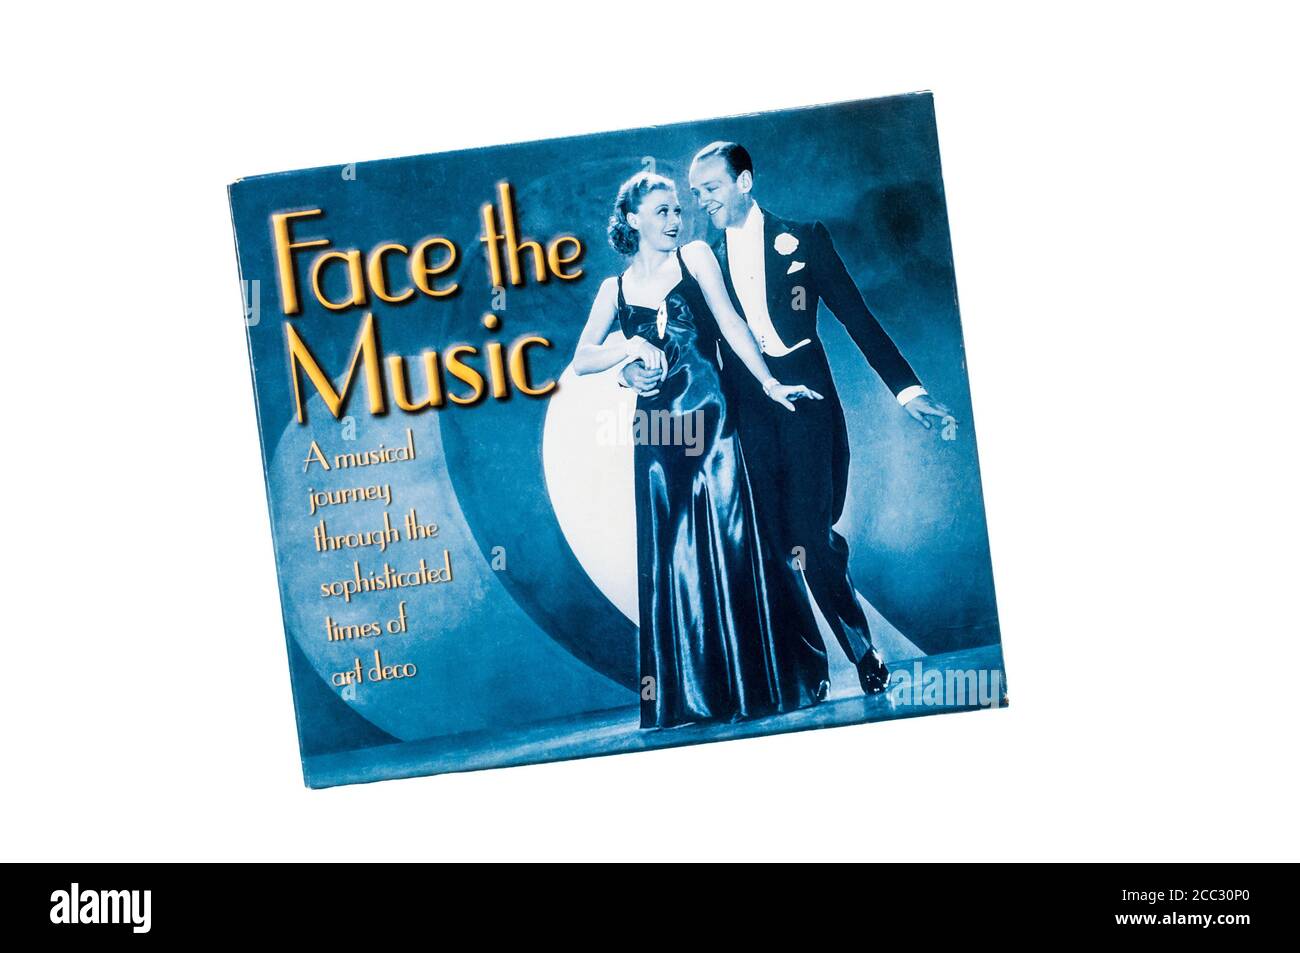 Face The Music wurde 2003 als digital remasterte 2 CD-Zusammenstellung von Titeln verschiedener Künstler veröffentlicht, darunter Fred Astaire & Ginger Rogers. Stockfoto